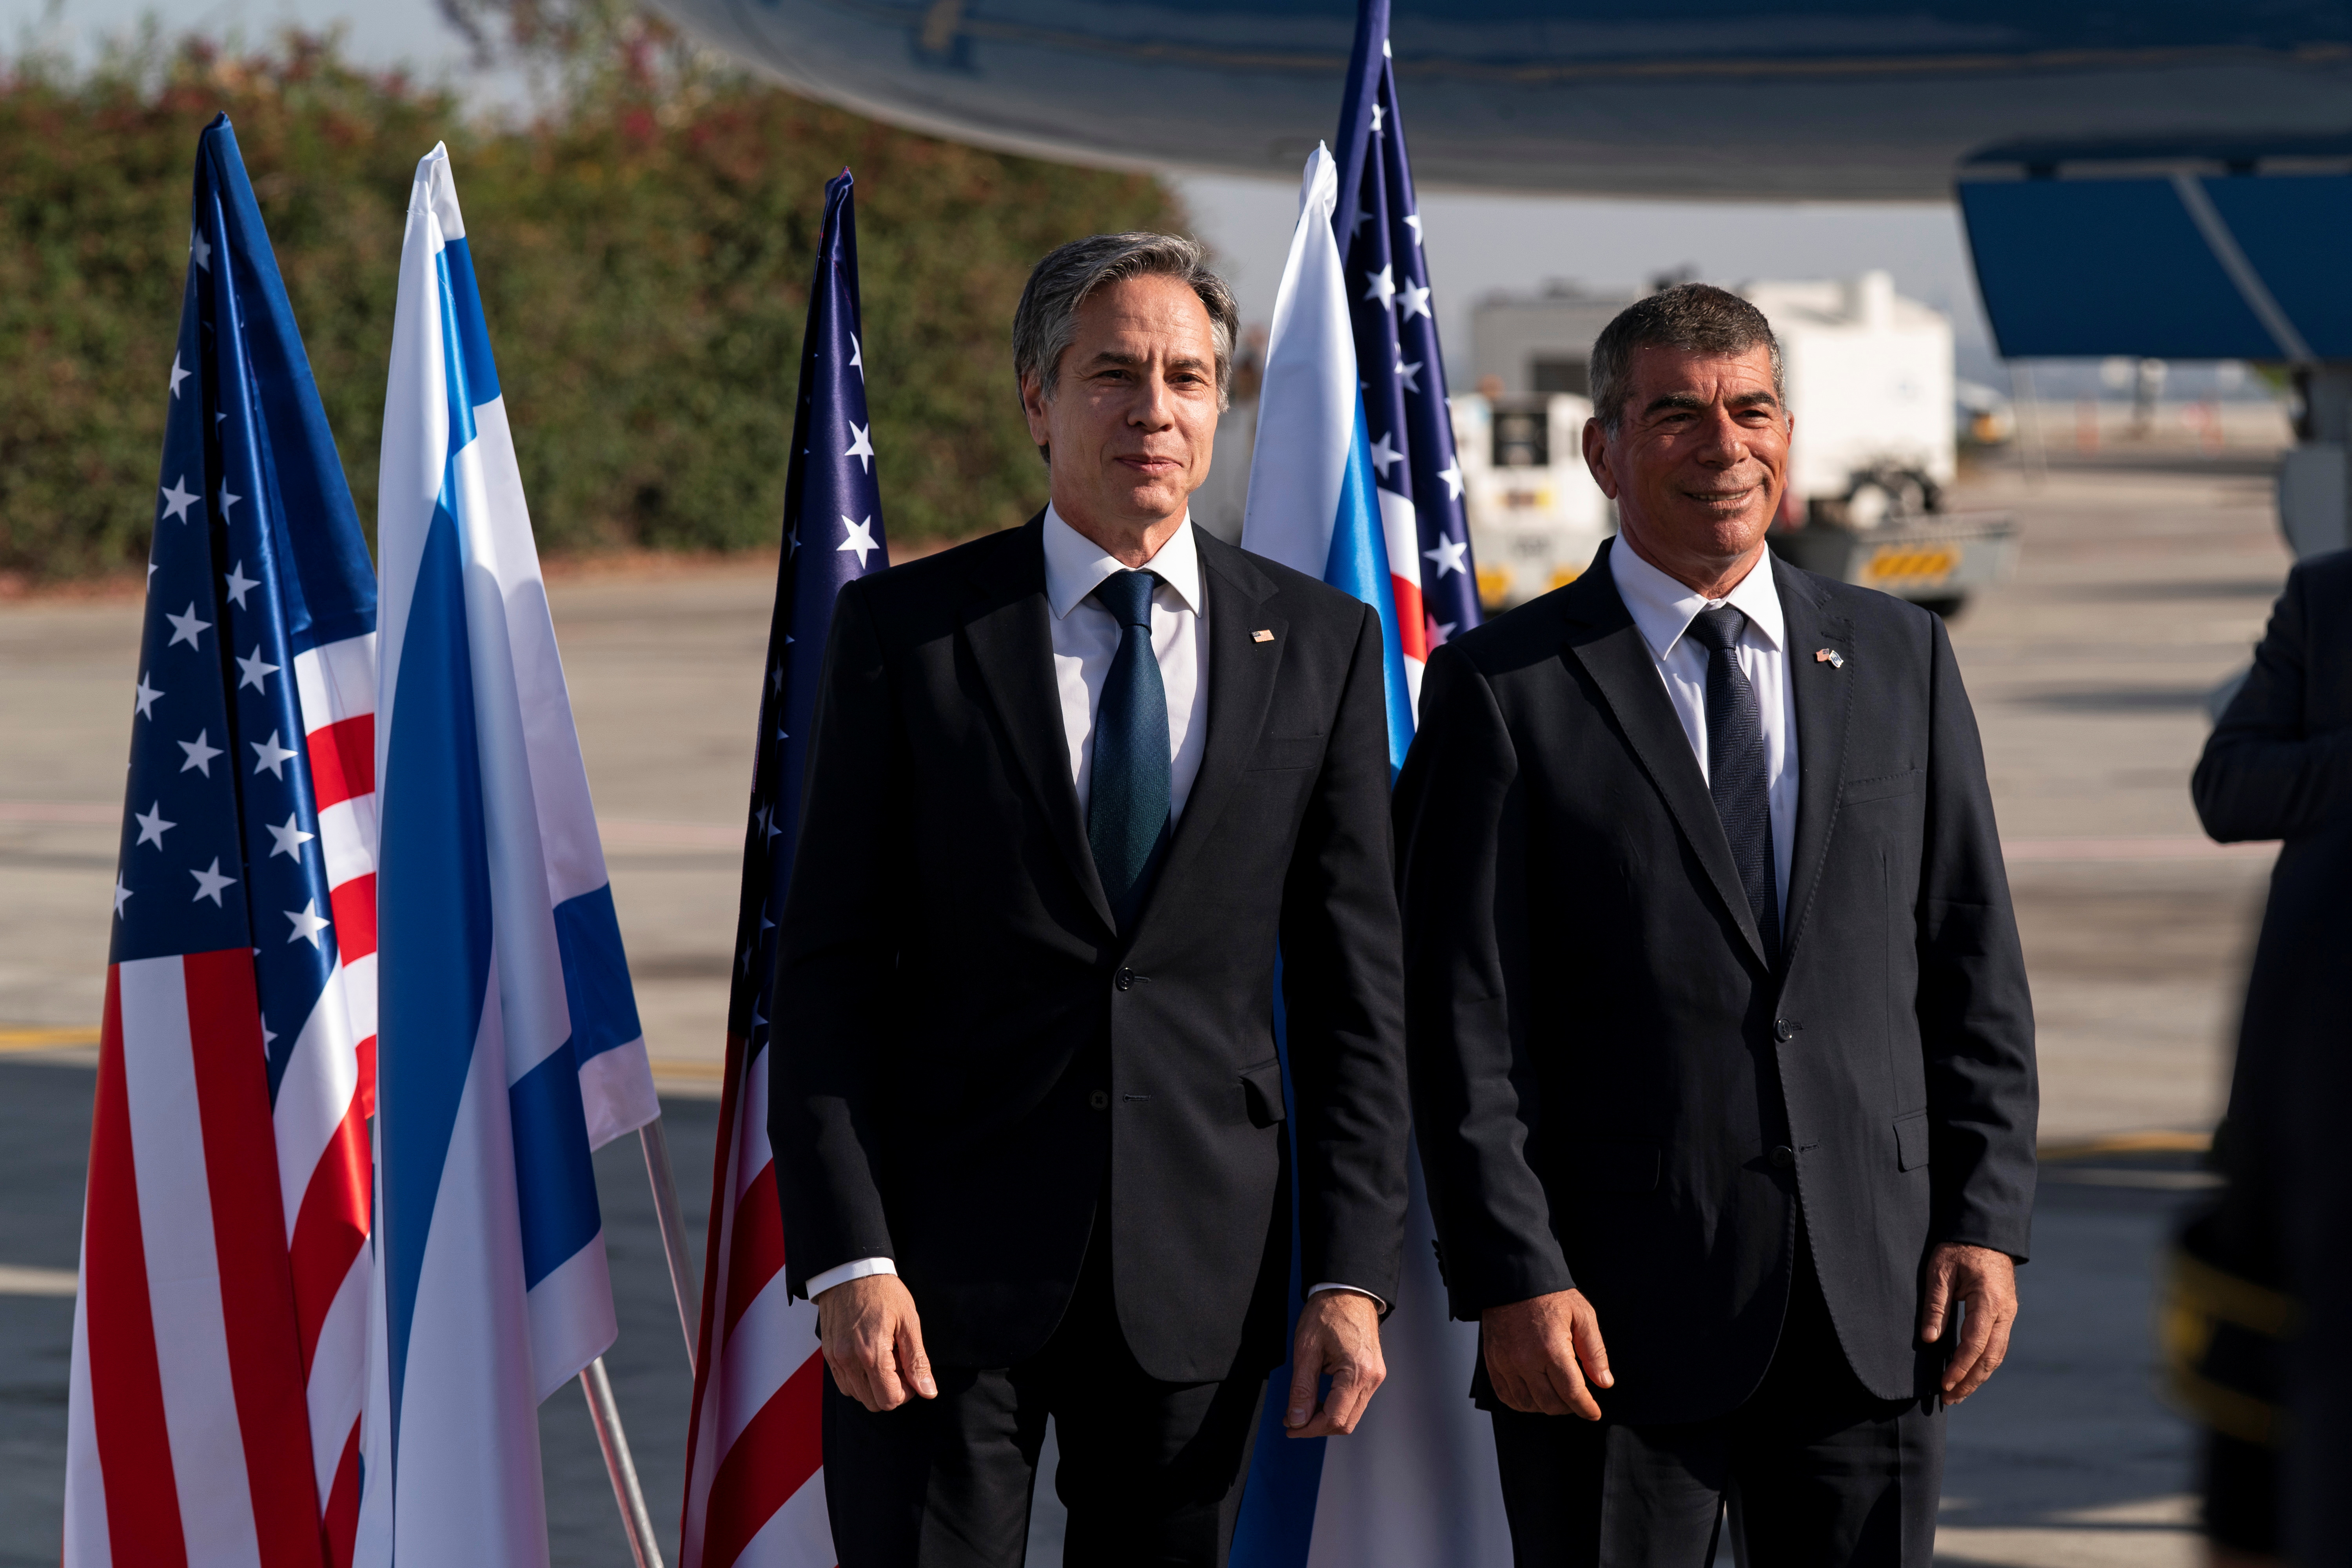 U.S. Secretary of State Antony Blinken talks with Israeli Foreign Minister Gabi Ashkenazi, upon arrival at Tel Aviv Ben Gurion Airport